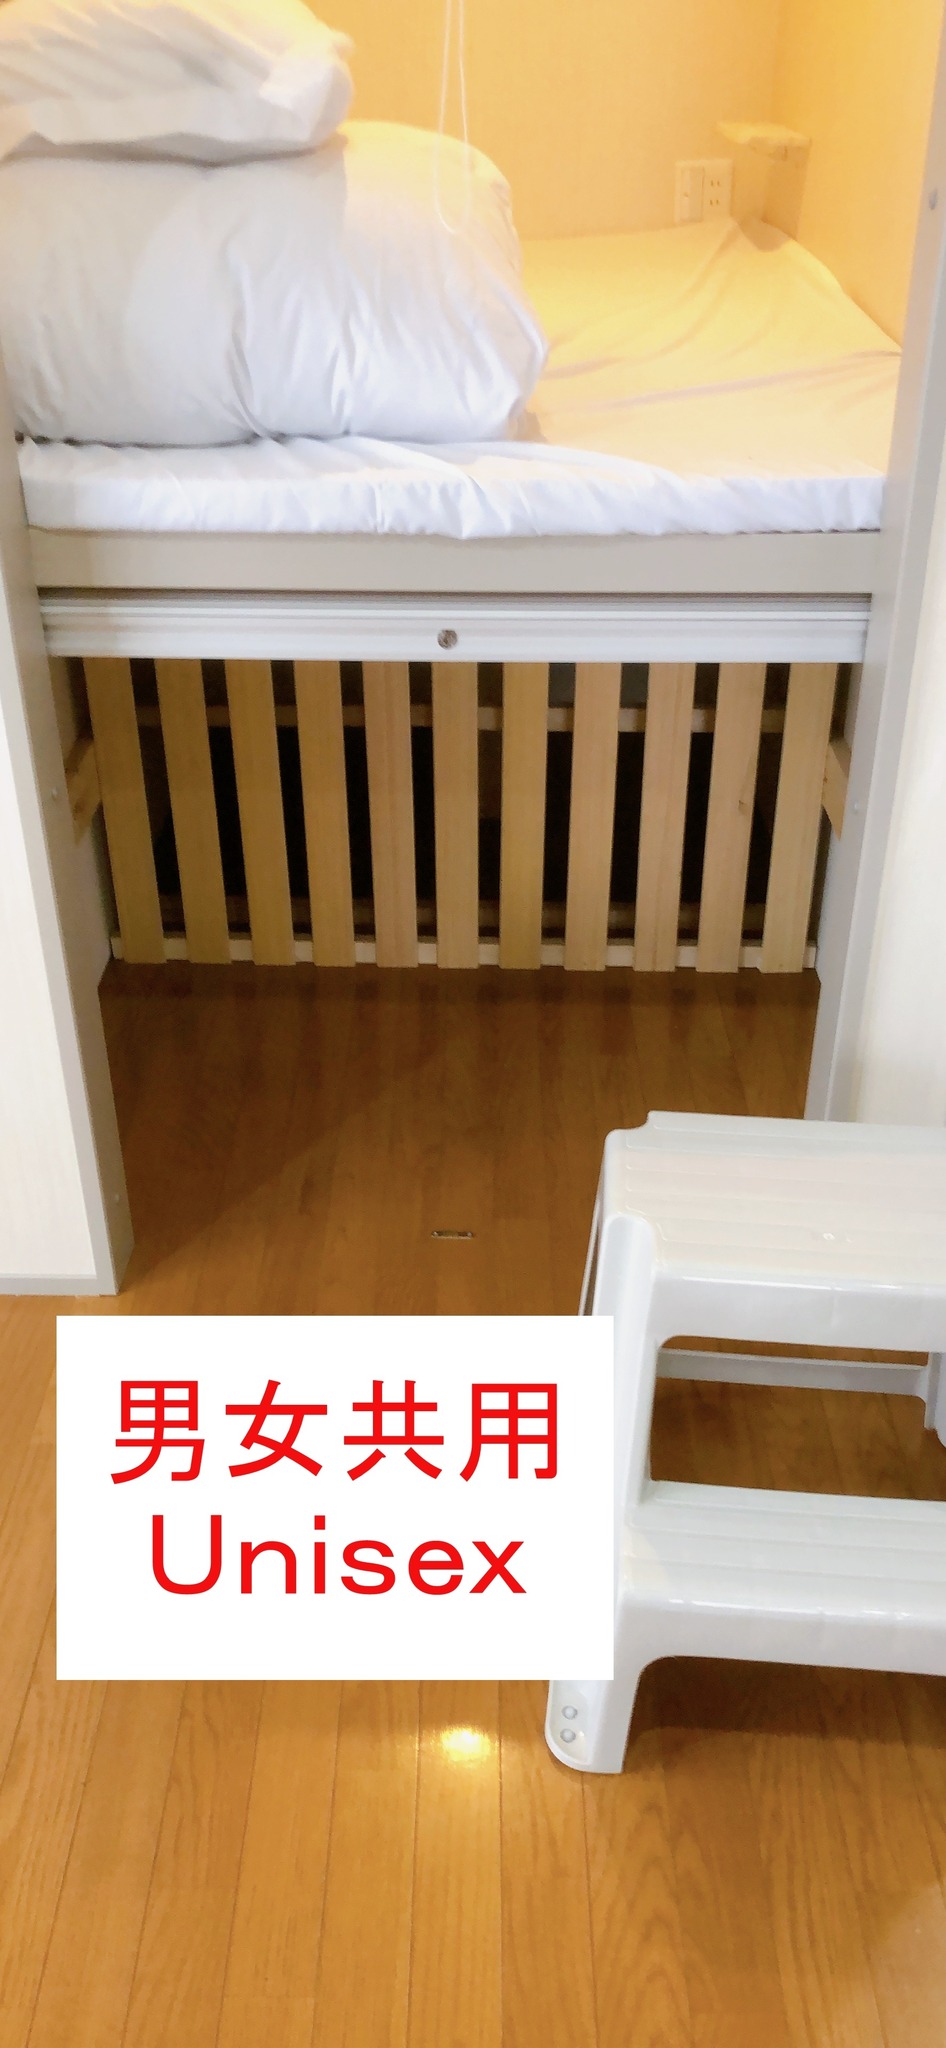 3階【ドミトリータイプ】男女共用ルーム/最大5名様まで宿泊可能(ベッド1名分)